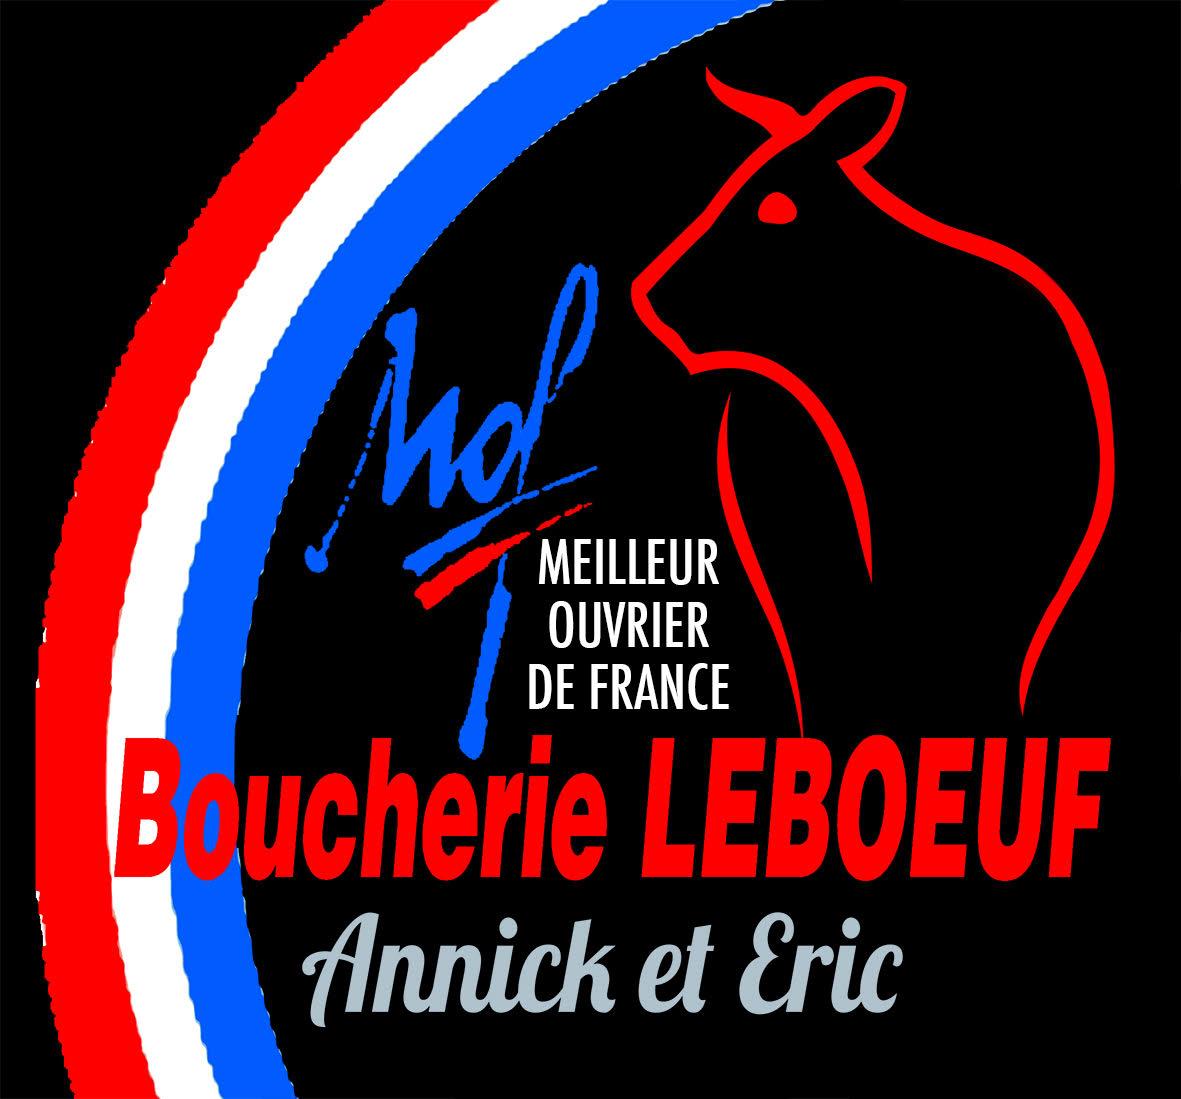 Boucherie Leboeuf